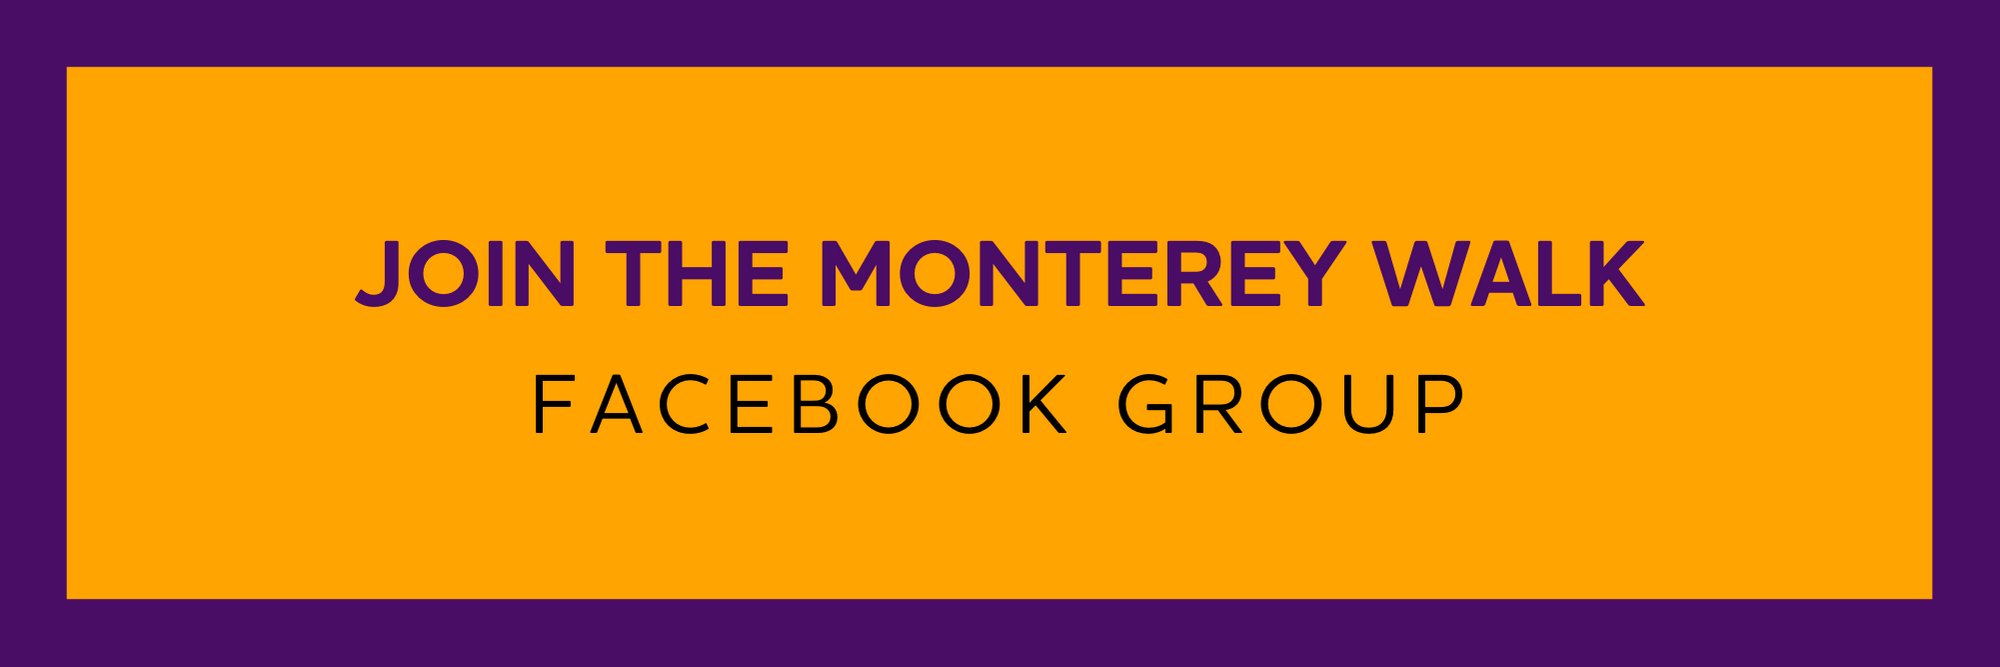 Botón de grupo de facebook Monterey Walk